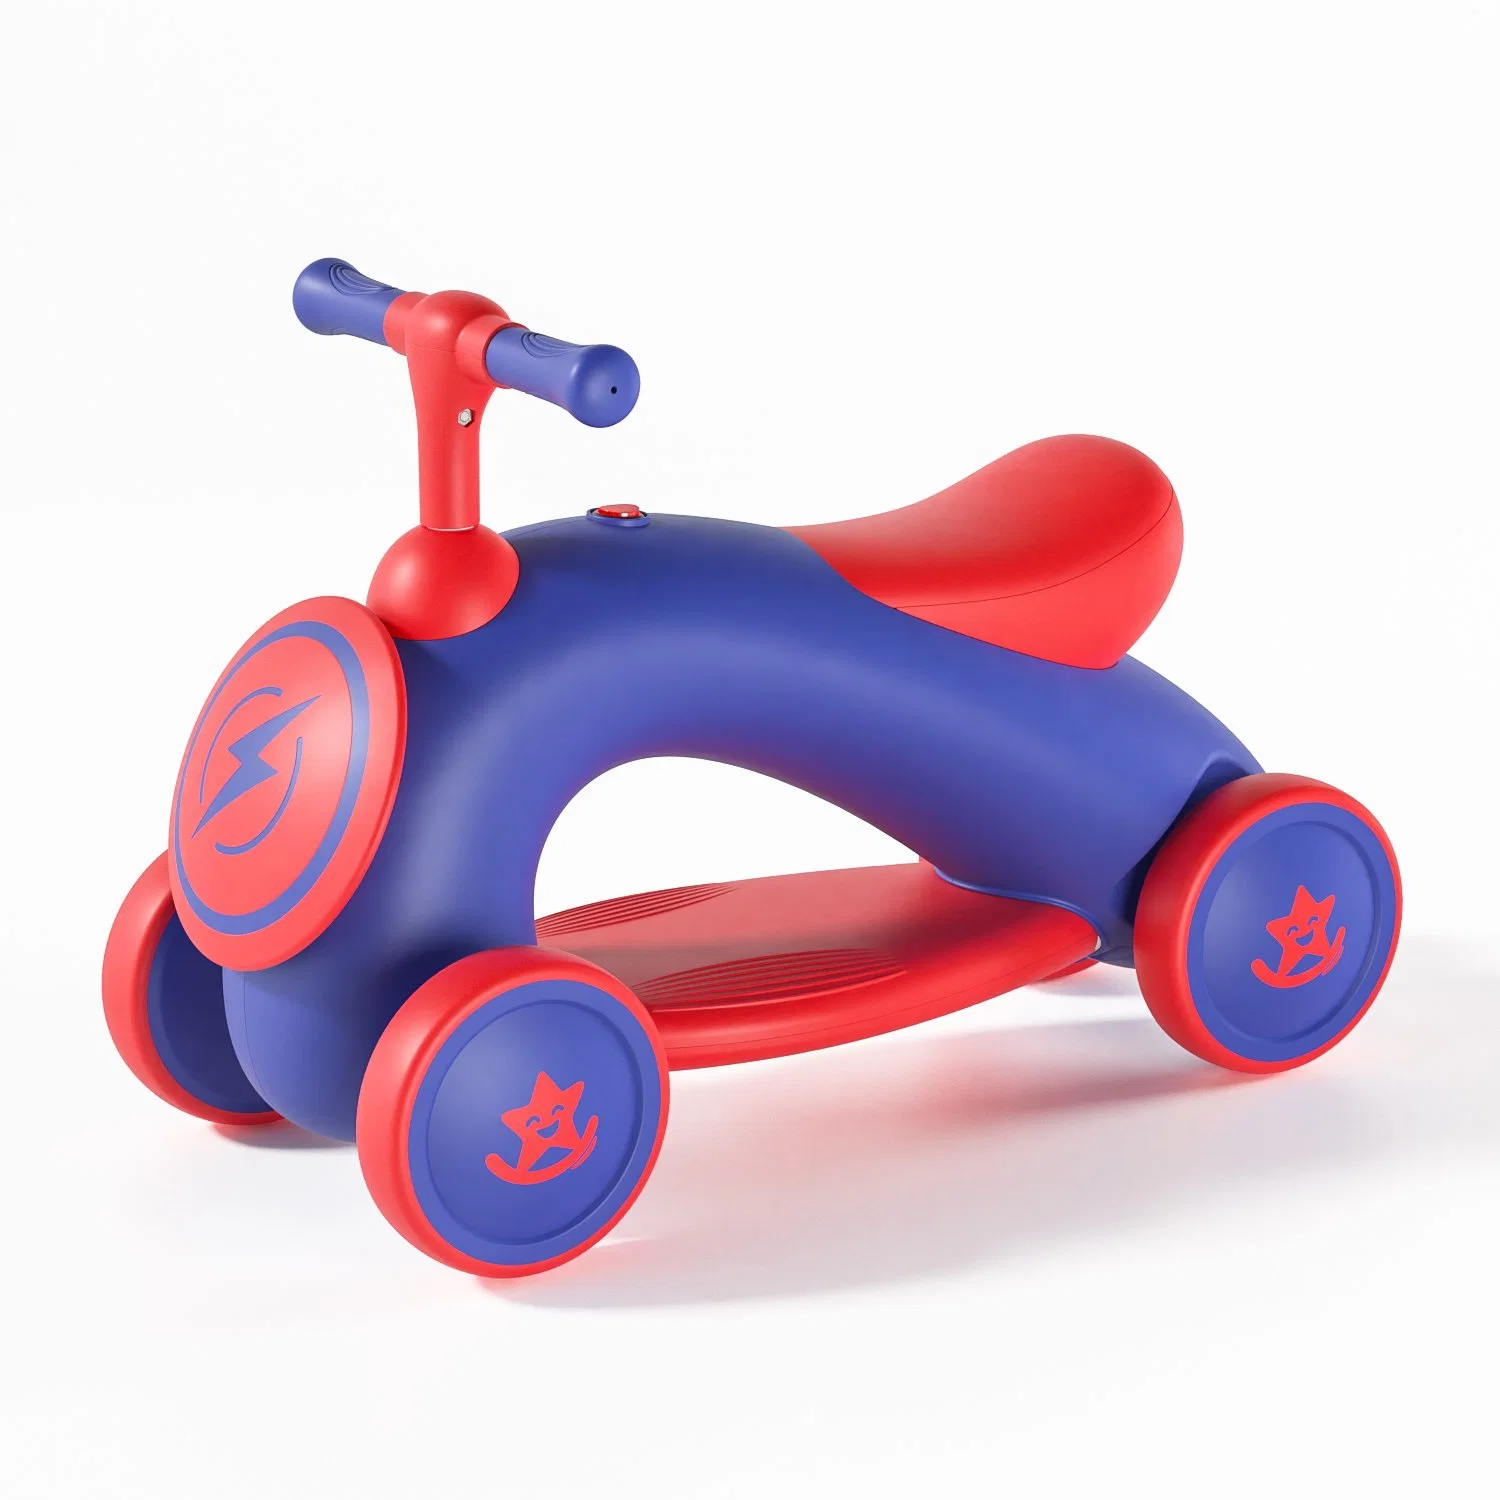 Usine Nouveau style 4 roues Equilibre des enfants Bike Ride des enfants Mini-voiture de marche pour bébé tricycle à jouets